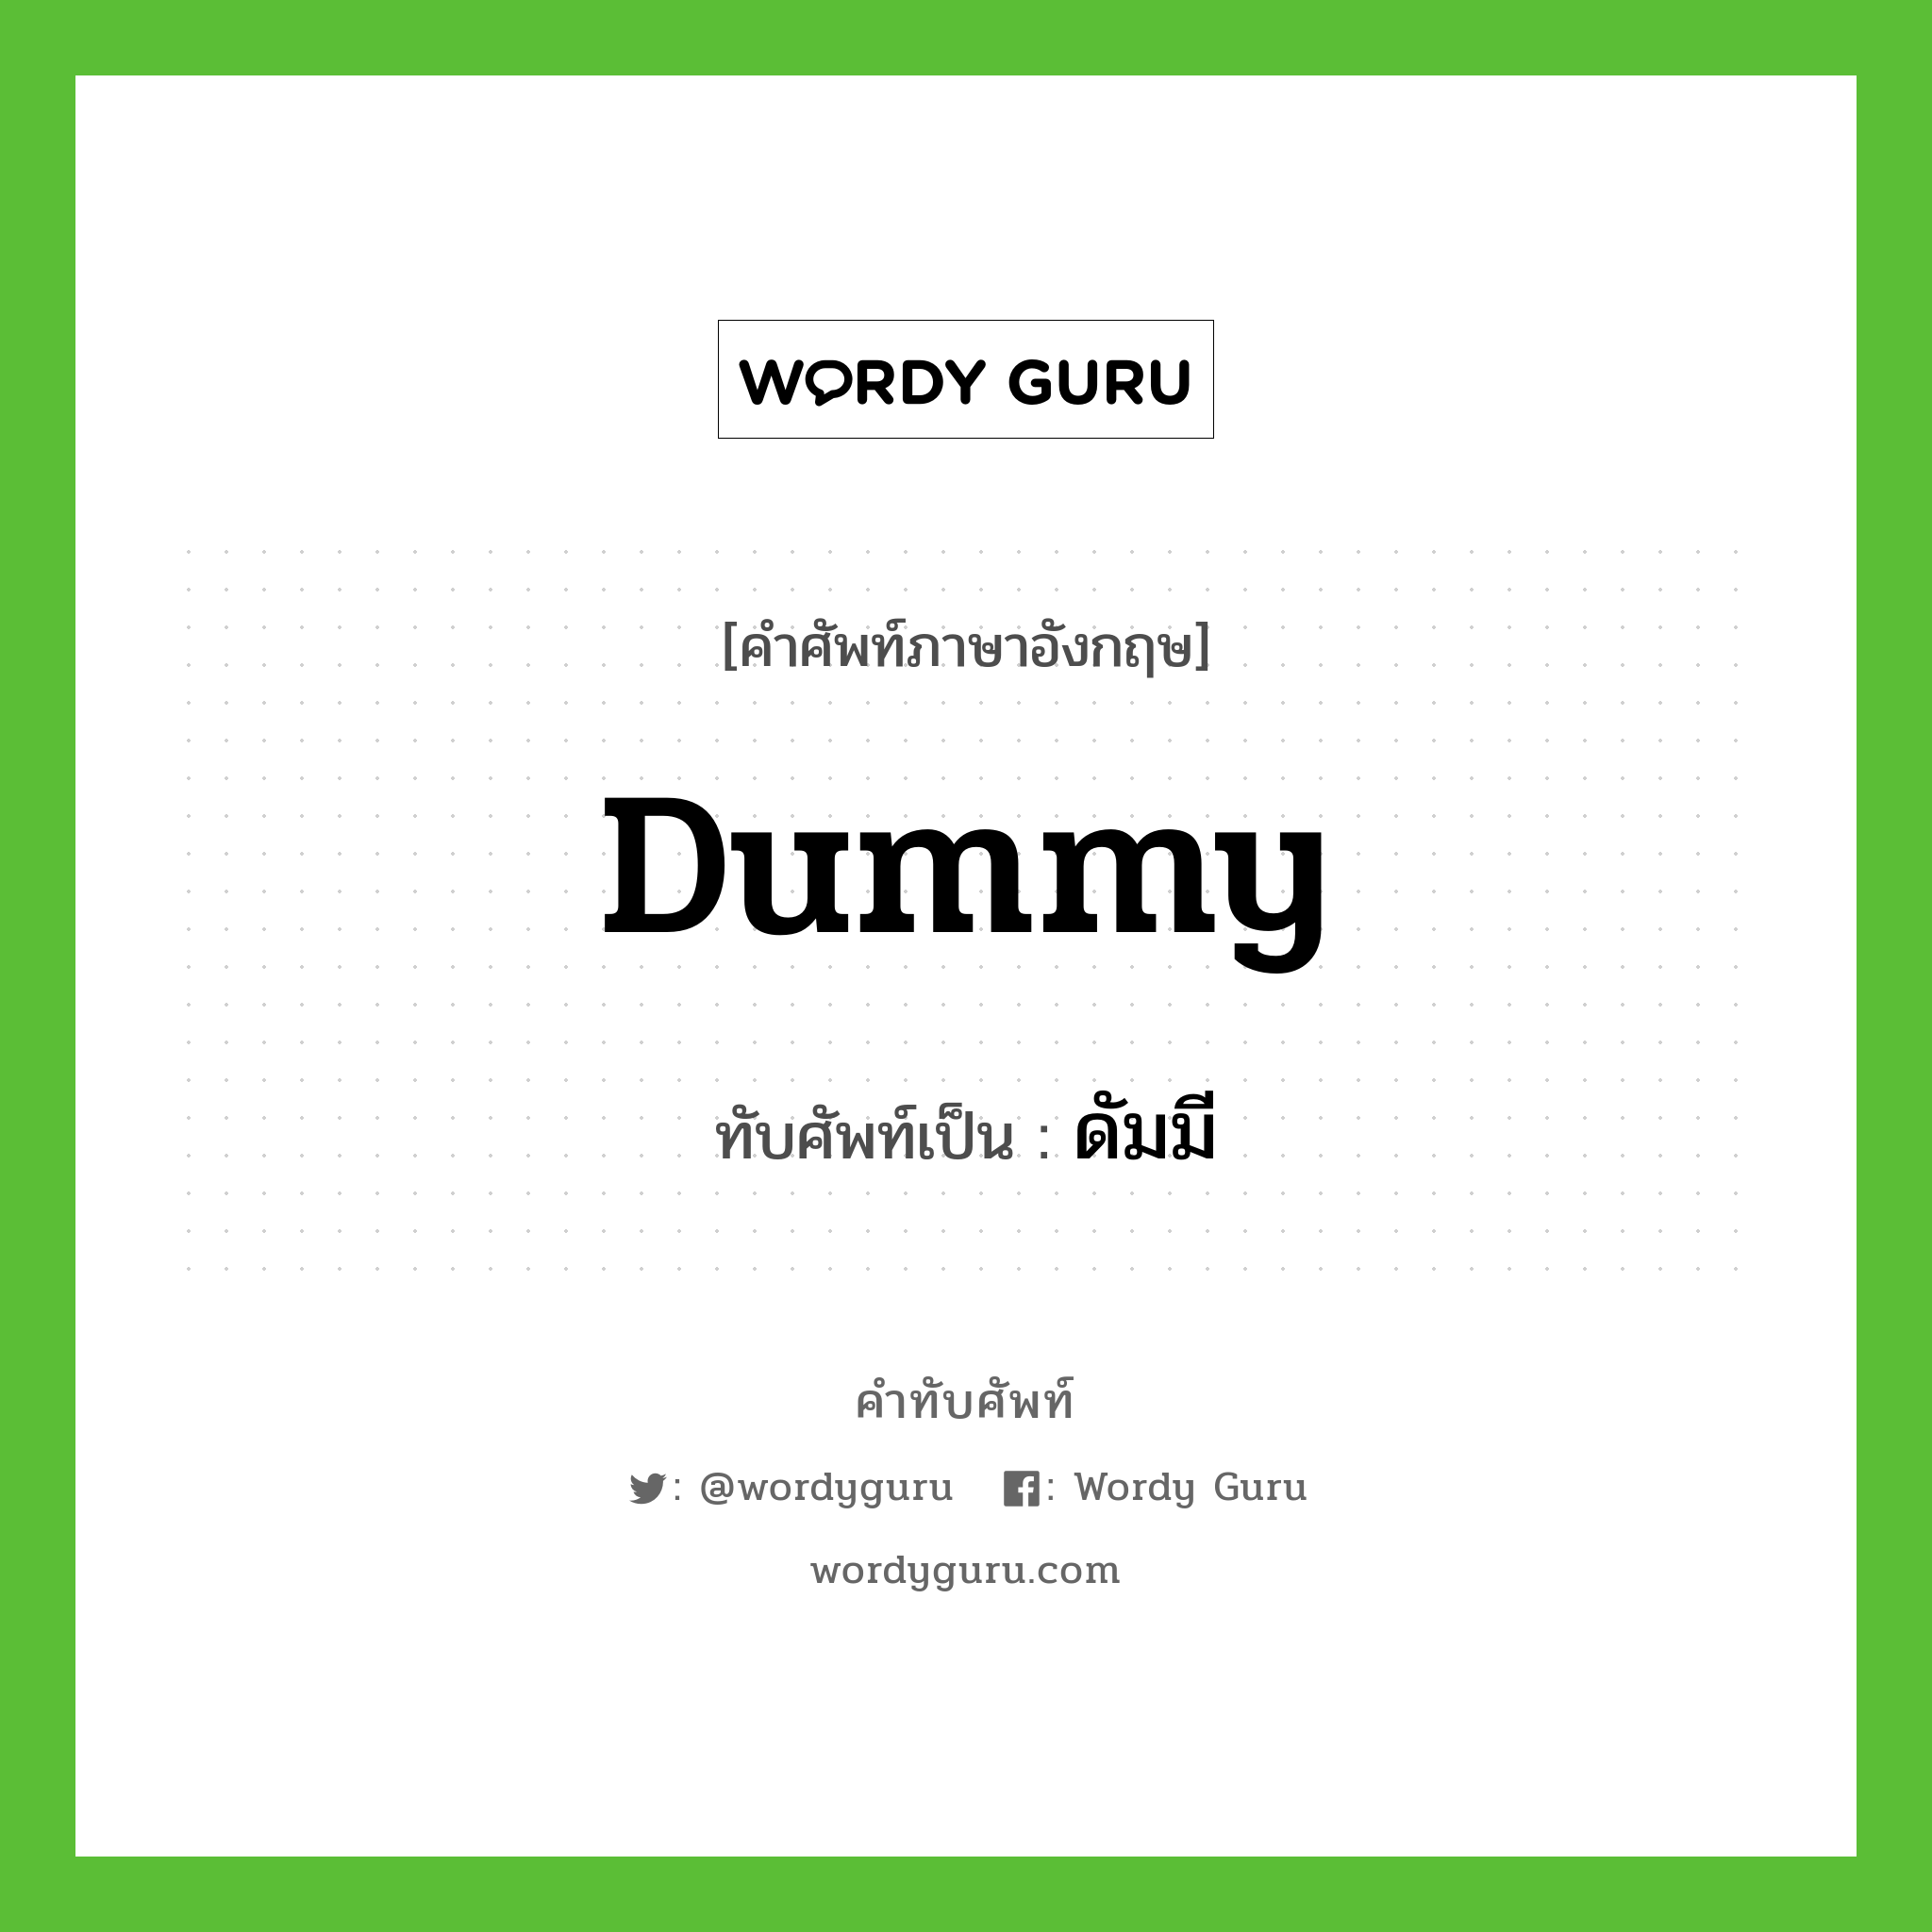 dummy เขียนเป็นคำไทยว่าอะไร?, คำศัพท์ภาษาอังกฤษ dummy ทับศัพท์เป็น ดัมมี